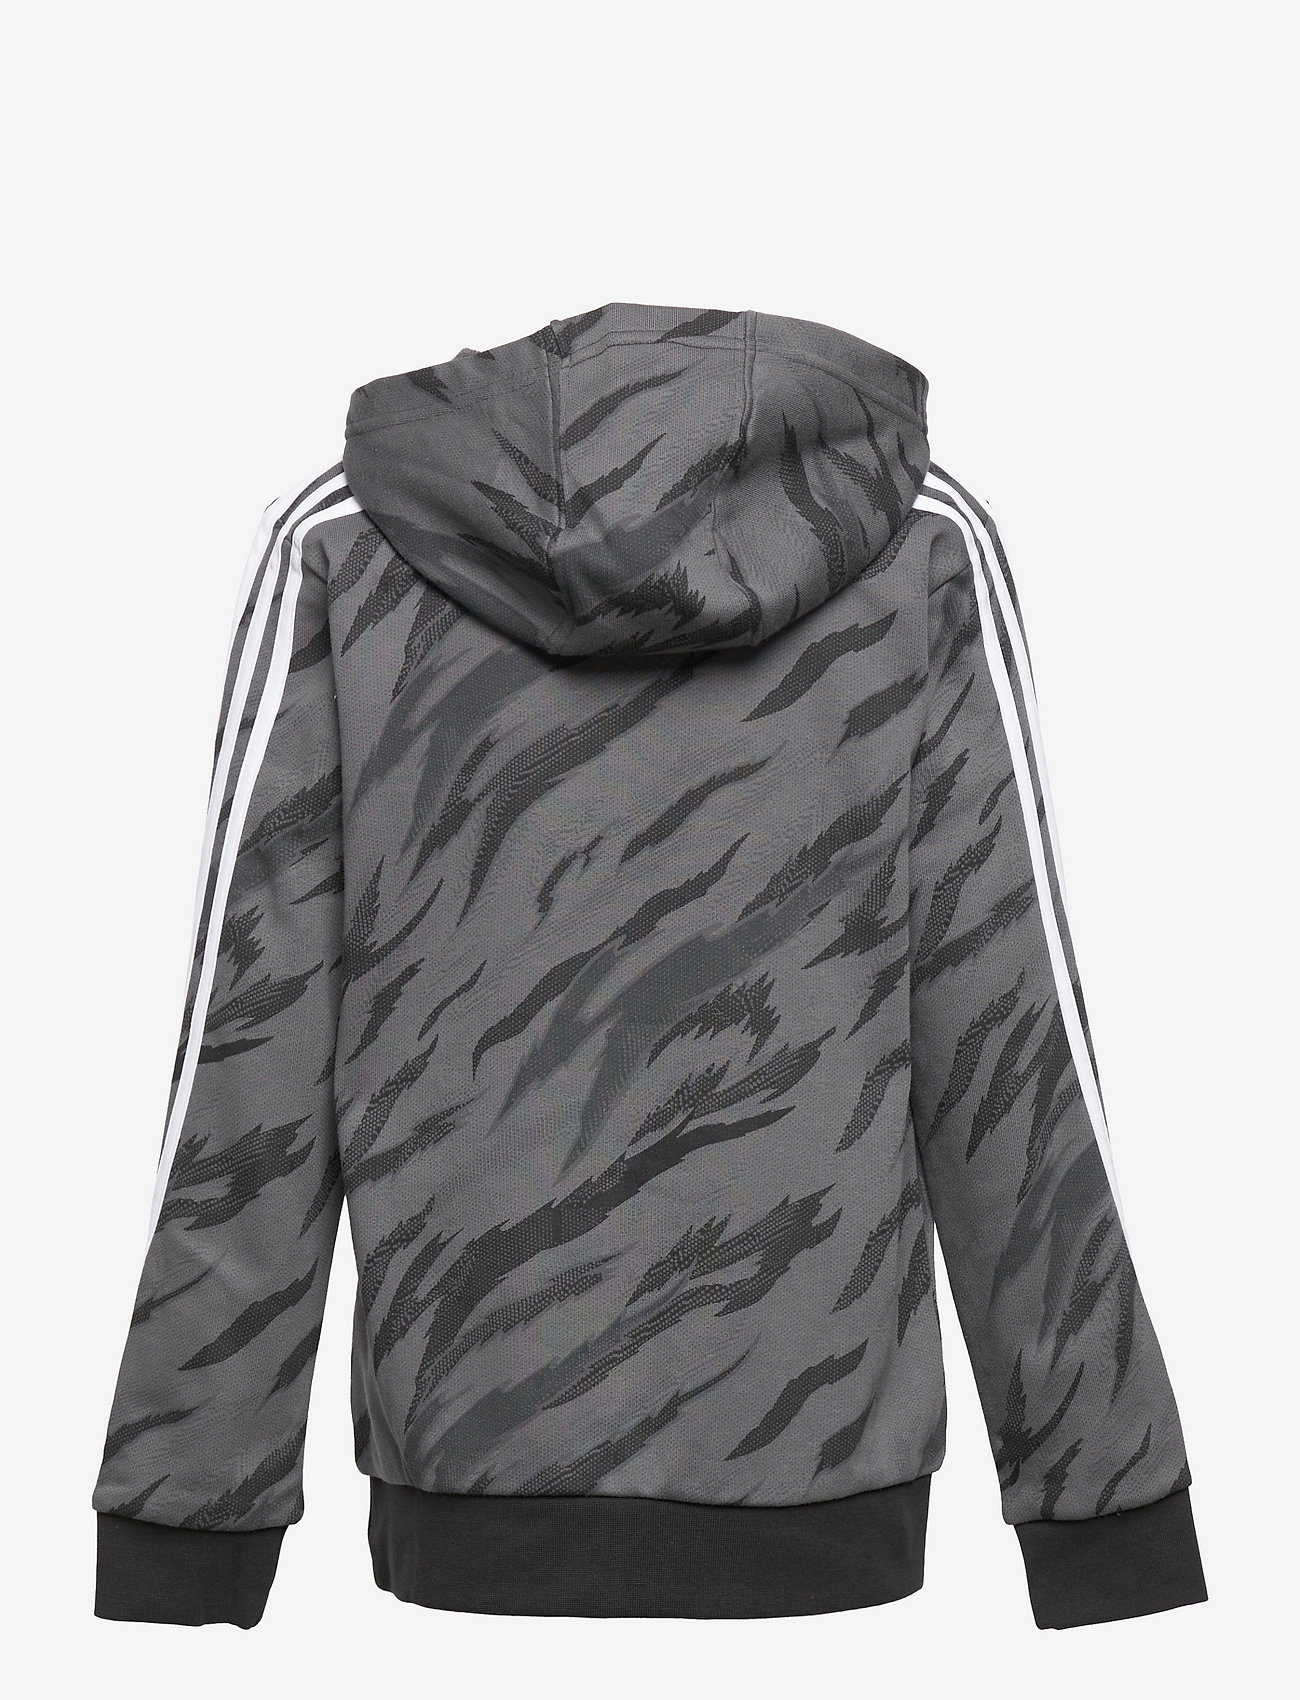 KINDER Pullovers & Sweatshirts Hoodie Primark Pullover Grau/Schwarz 9Y Rabatt 60 % 